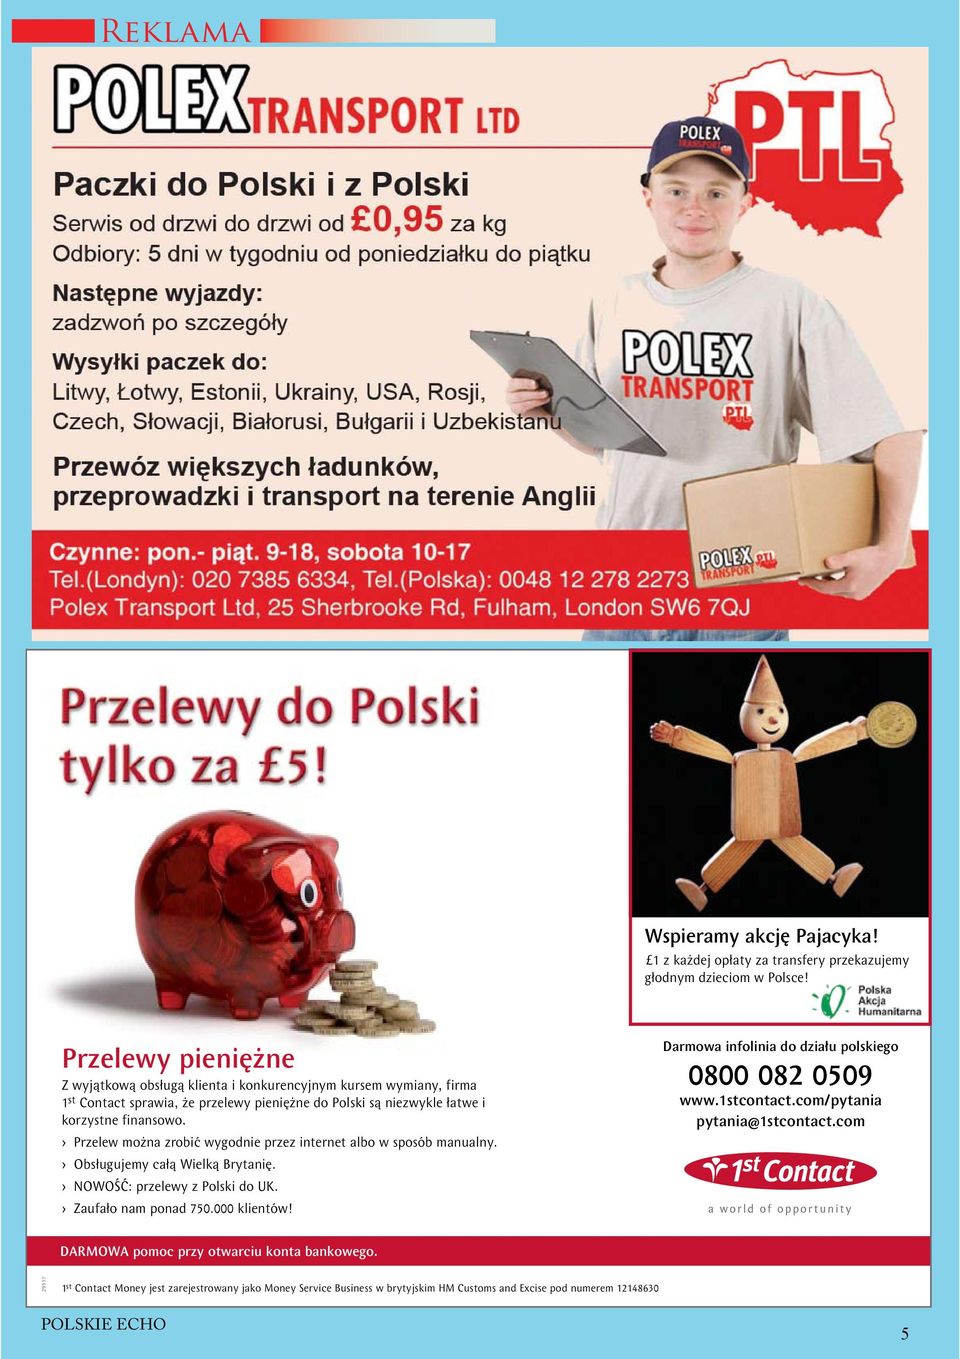 > Przelew można zrobić wygodnie przez internet albo w sposób manualny. > Obsługujemy całą Wielką Brytanię. > NOWOŚĆ: przelewy z Polski do UK. > Zaufało nam ponad 750.000 klientów!